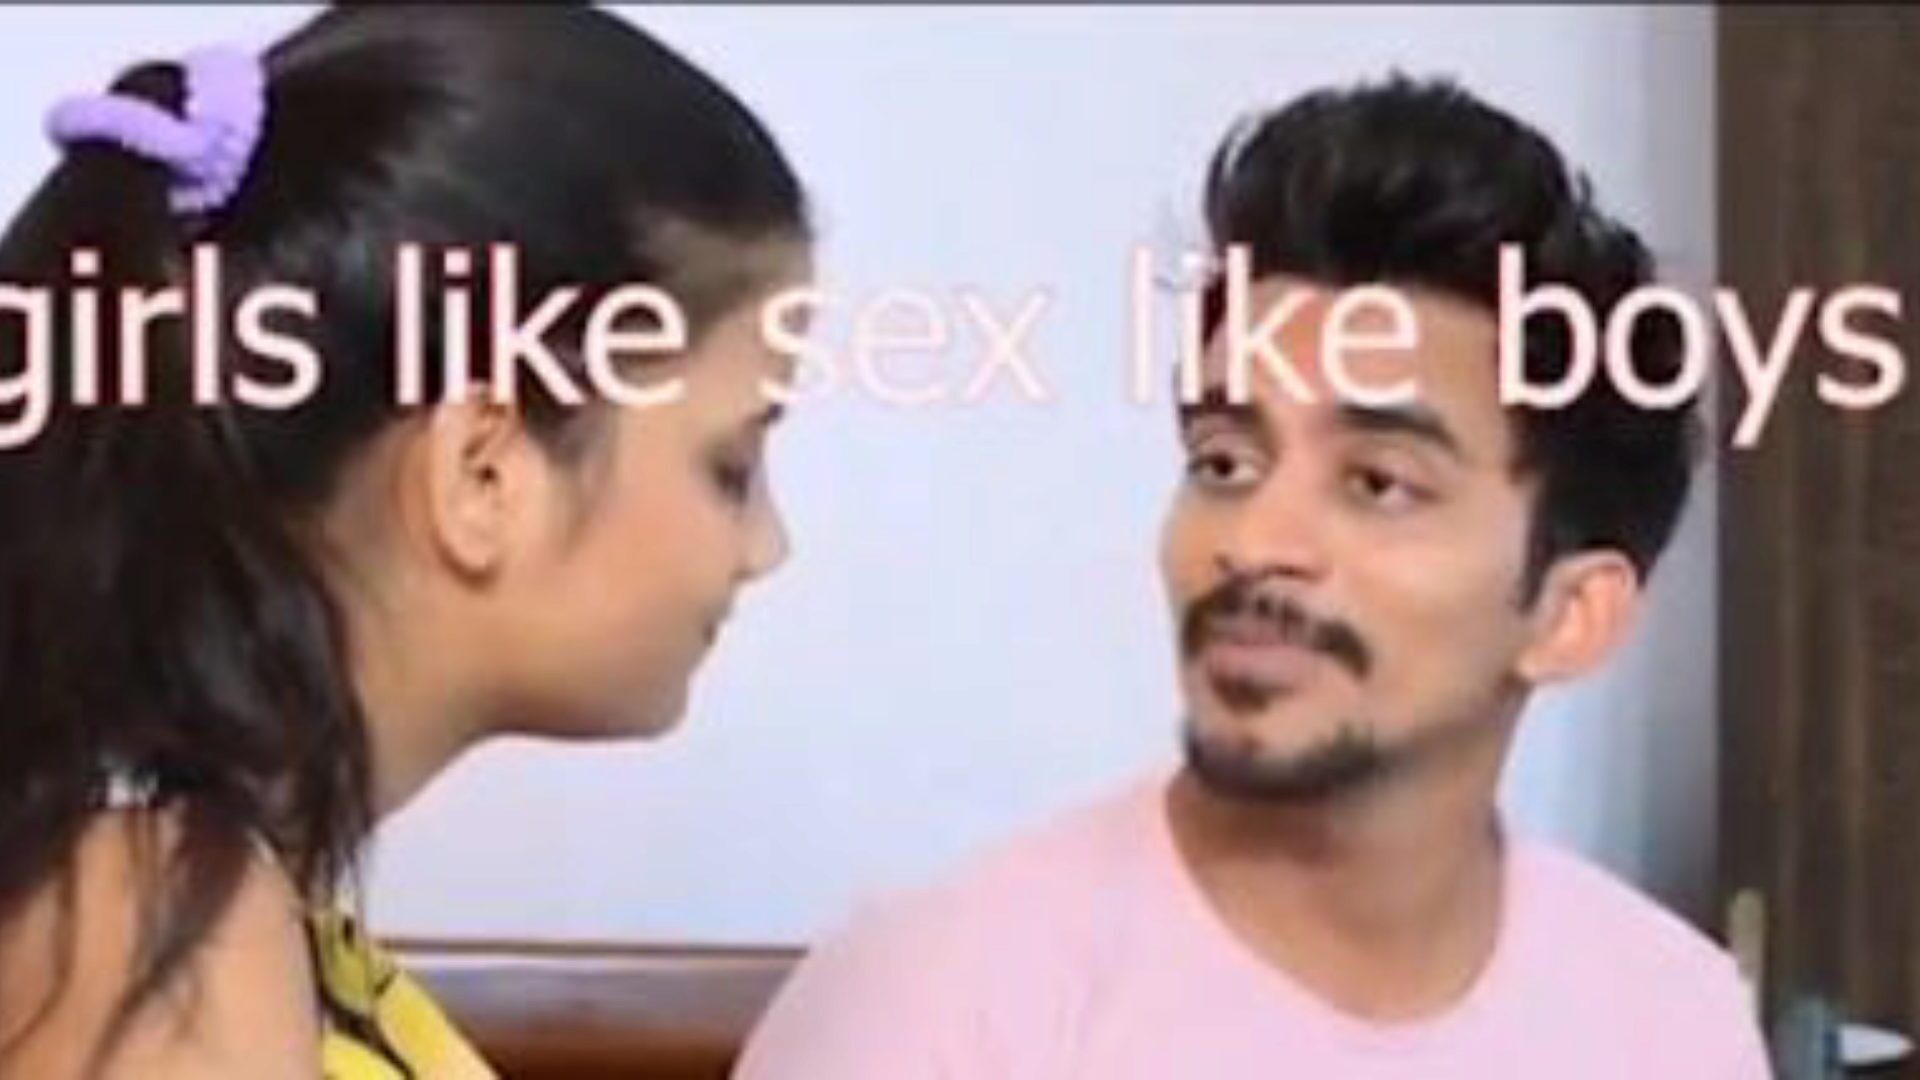 ghar pe aai gost ke saath sex hindi audio: besplatna pornografija 6a gledati ghar pe aai gost ke saath sex hindi audio filmska scena na xhamster - ultimativnoj arhivi besplatnih azijskih indijskih hardcore porno video isječaka